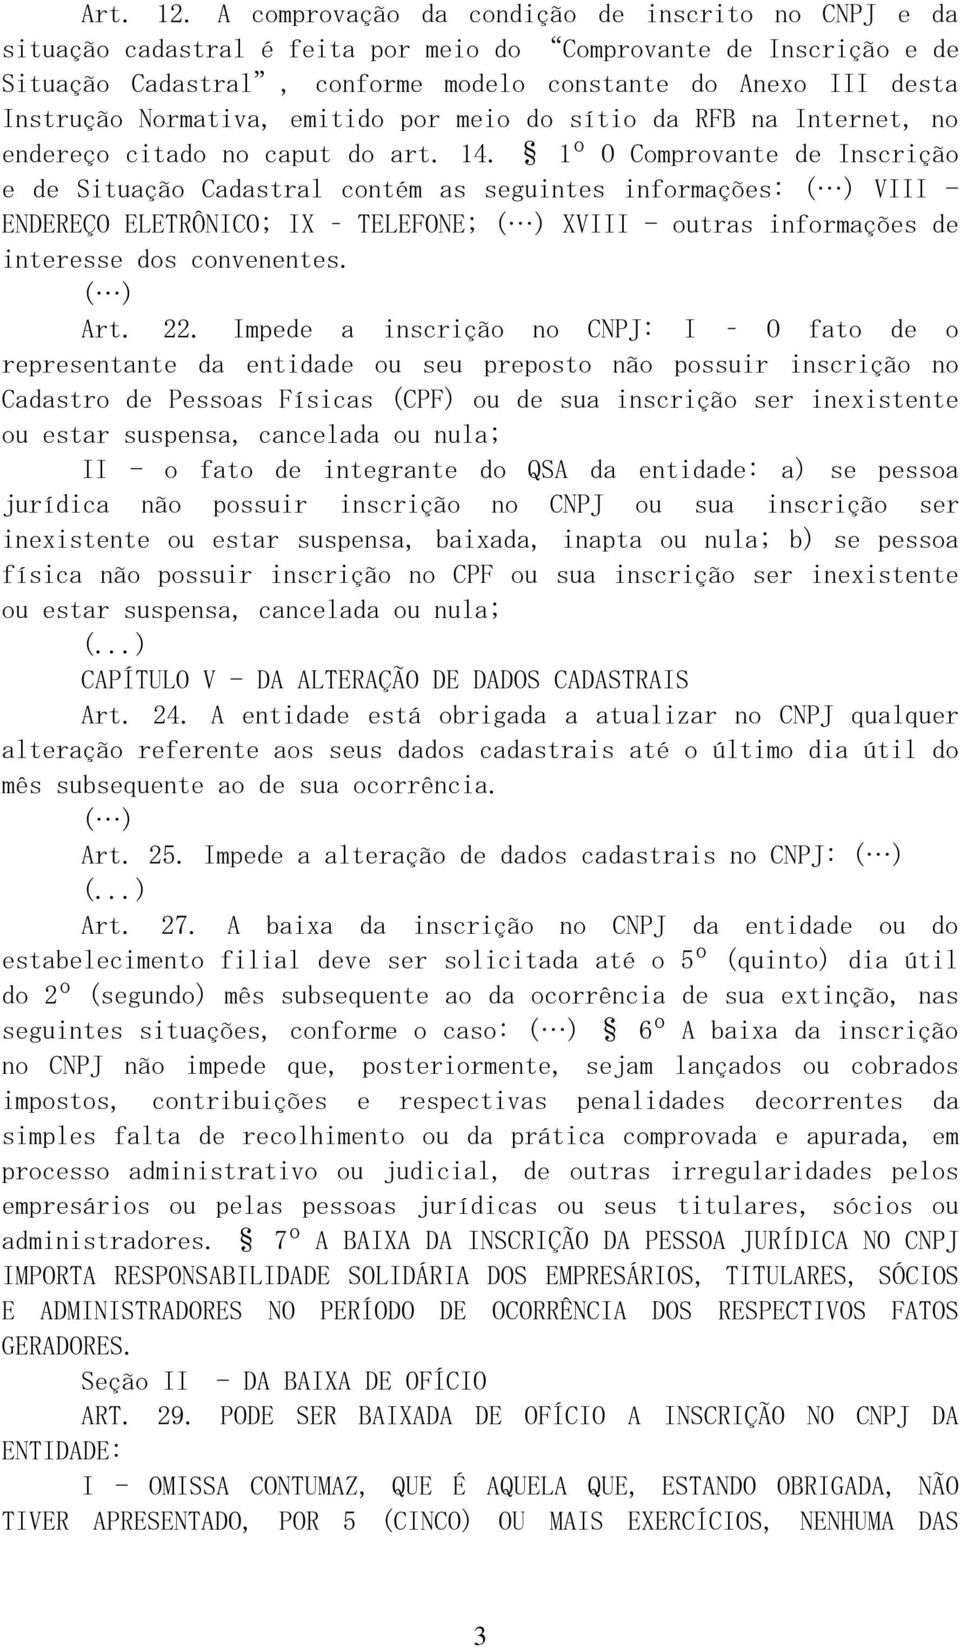 Normativa, emitido por meio do sítio da RFB na Internet, no endereço citado no caput do art. 14.